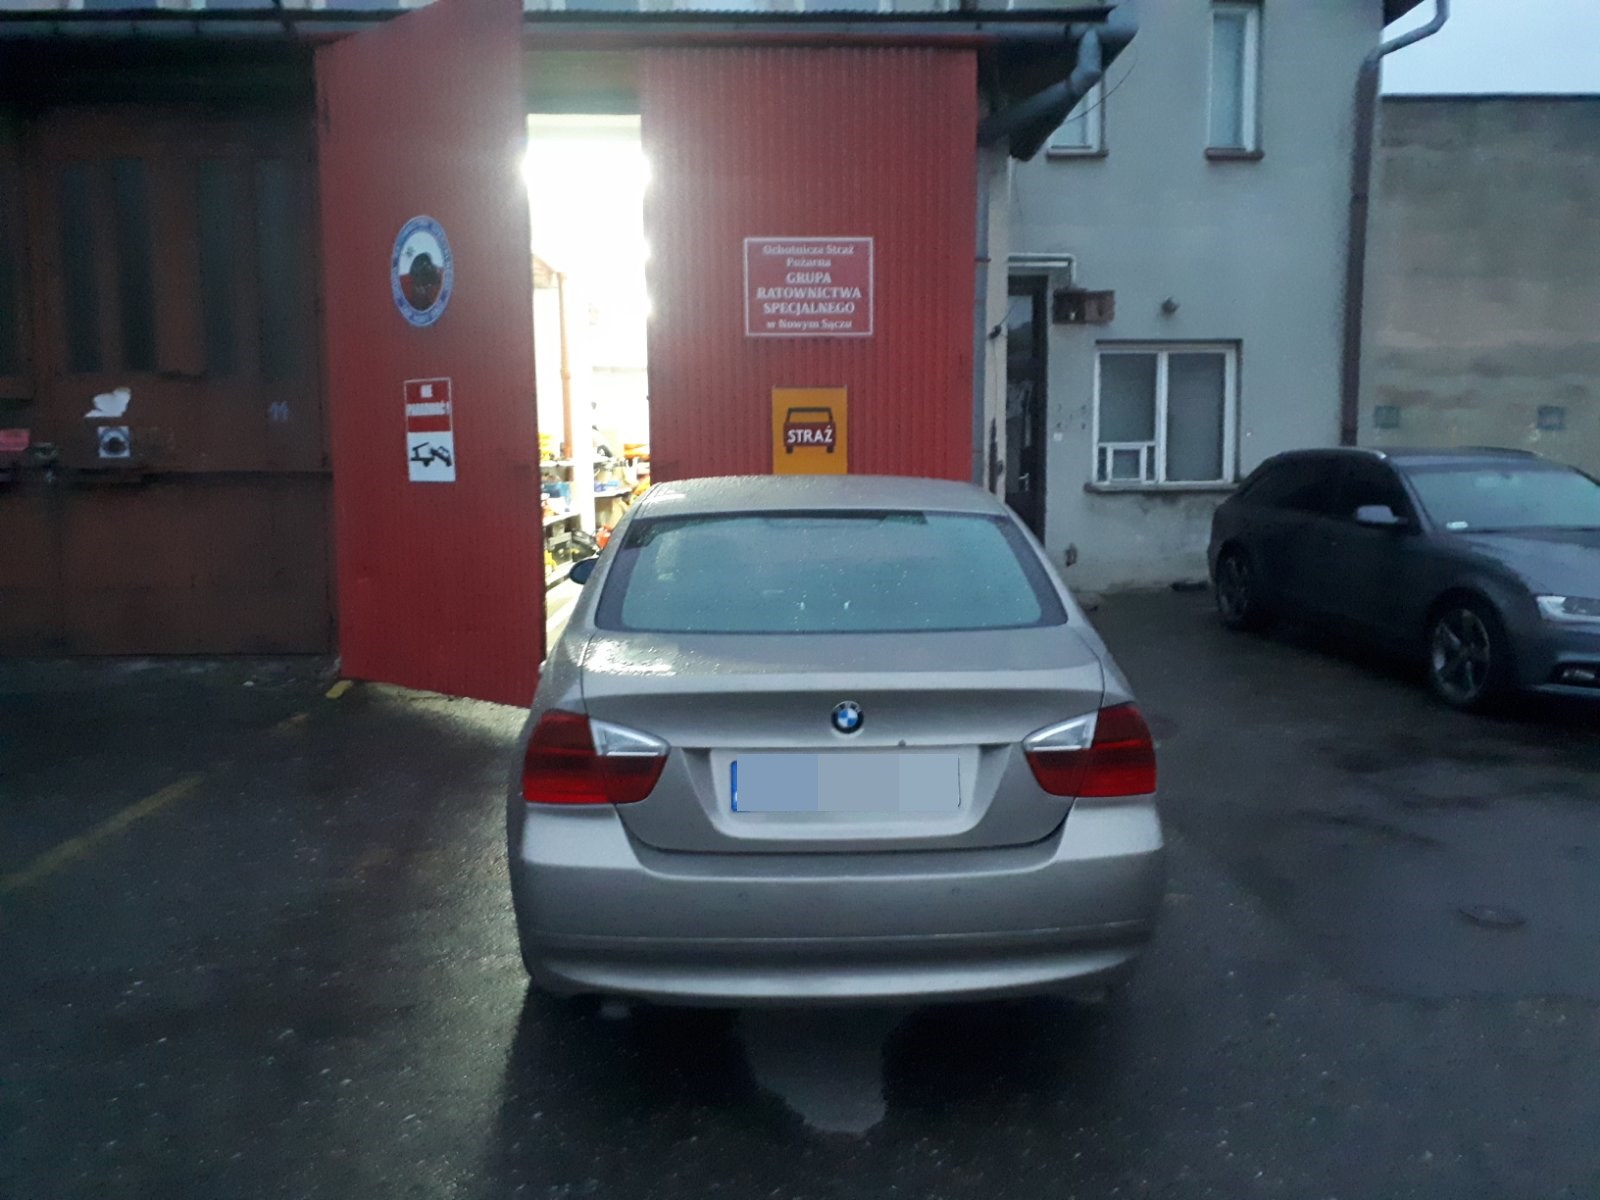 Grupa Ratownictwa Specjalnego OSP Nowy Sącz, Maślany Rynek, klienci zastawiają bramy garażowe GRS OSP Nowy Sącz